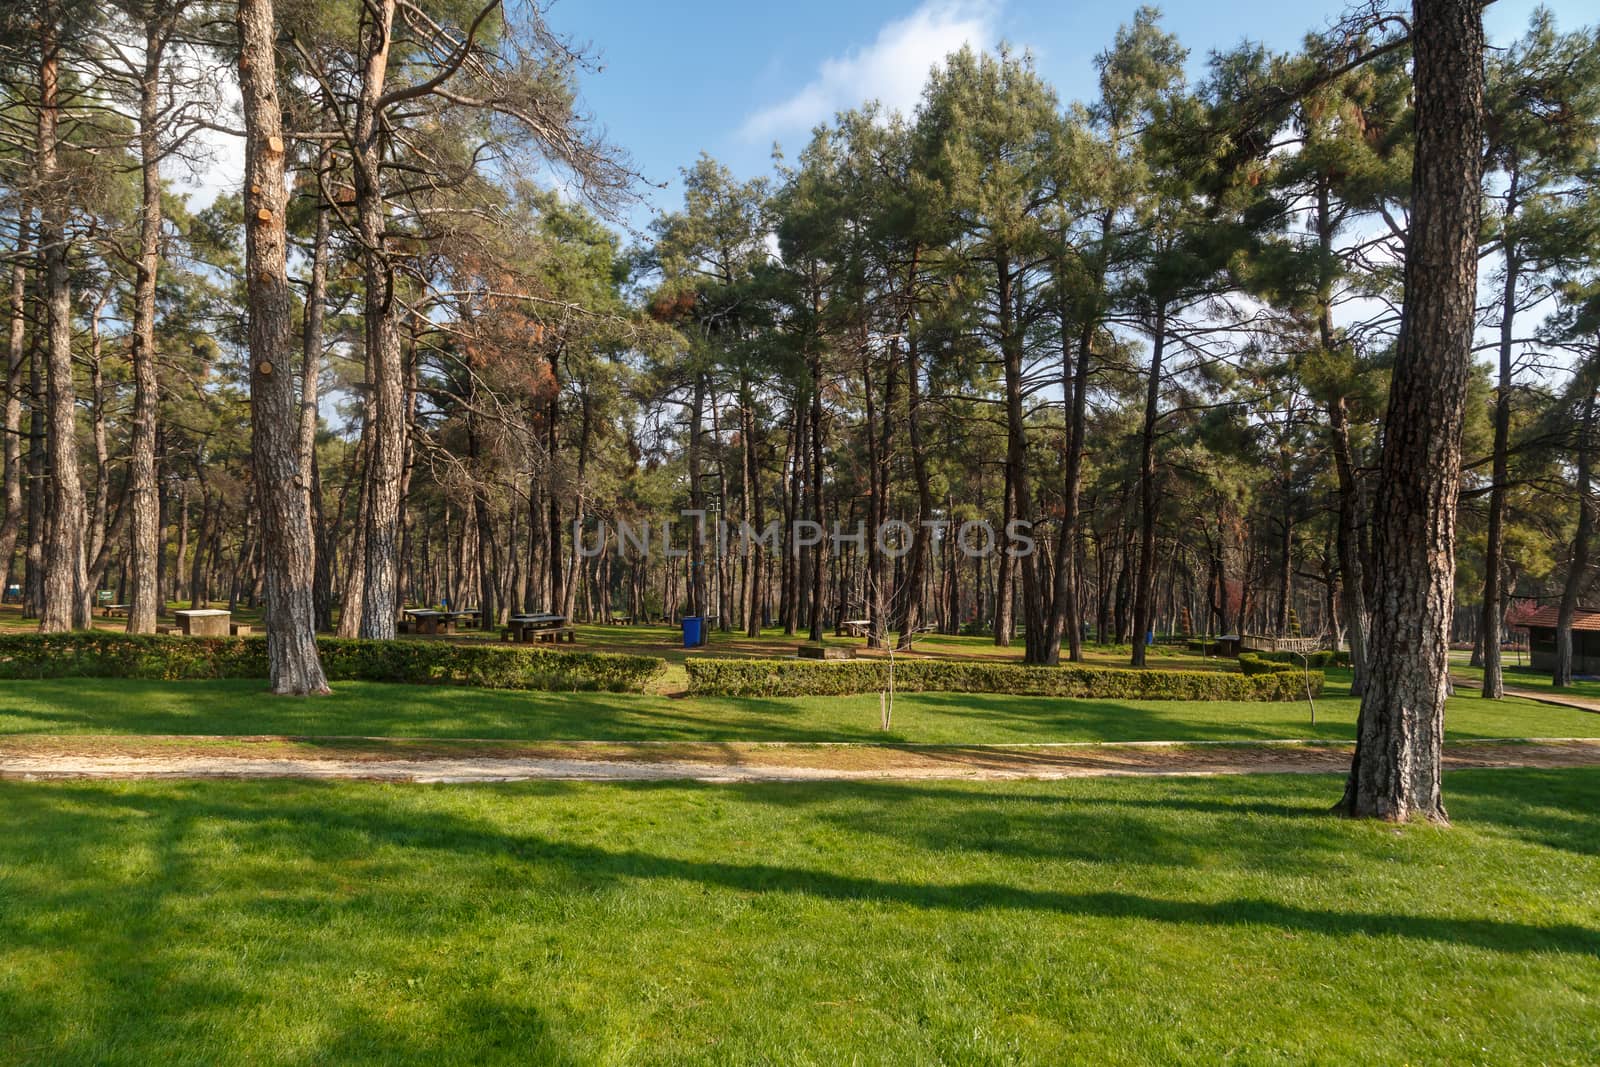 Gardev View with Pine by niglaynike